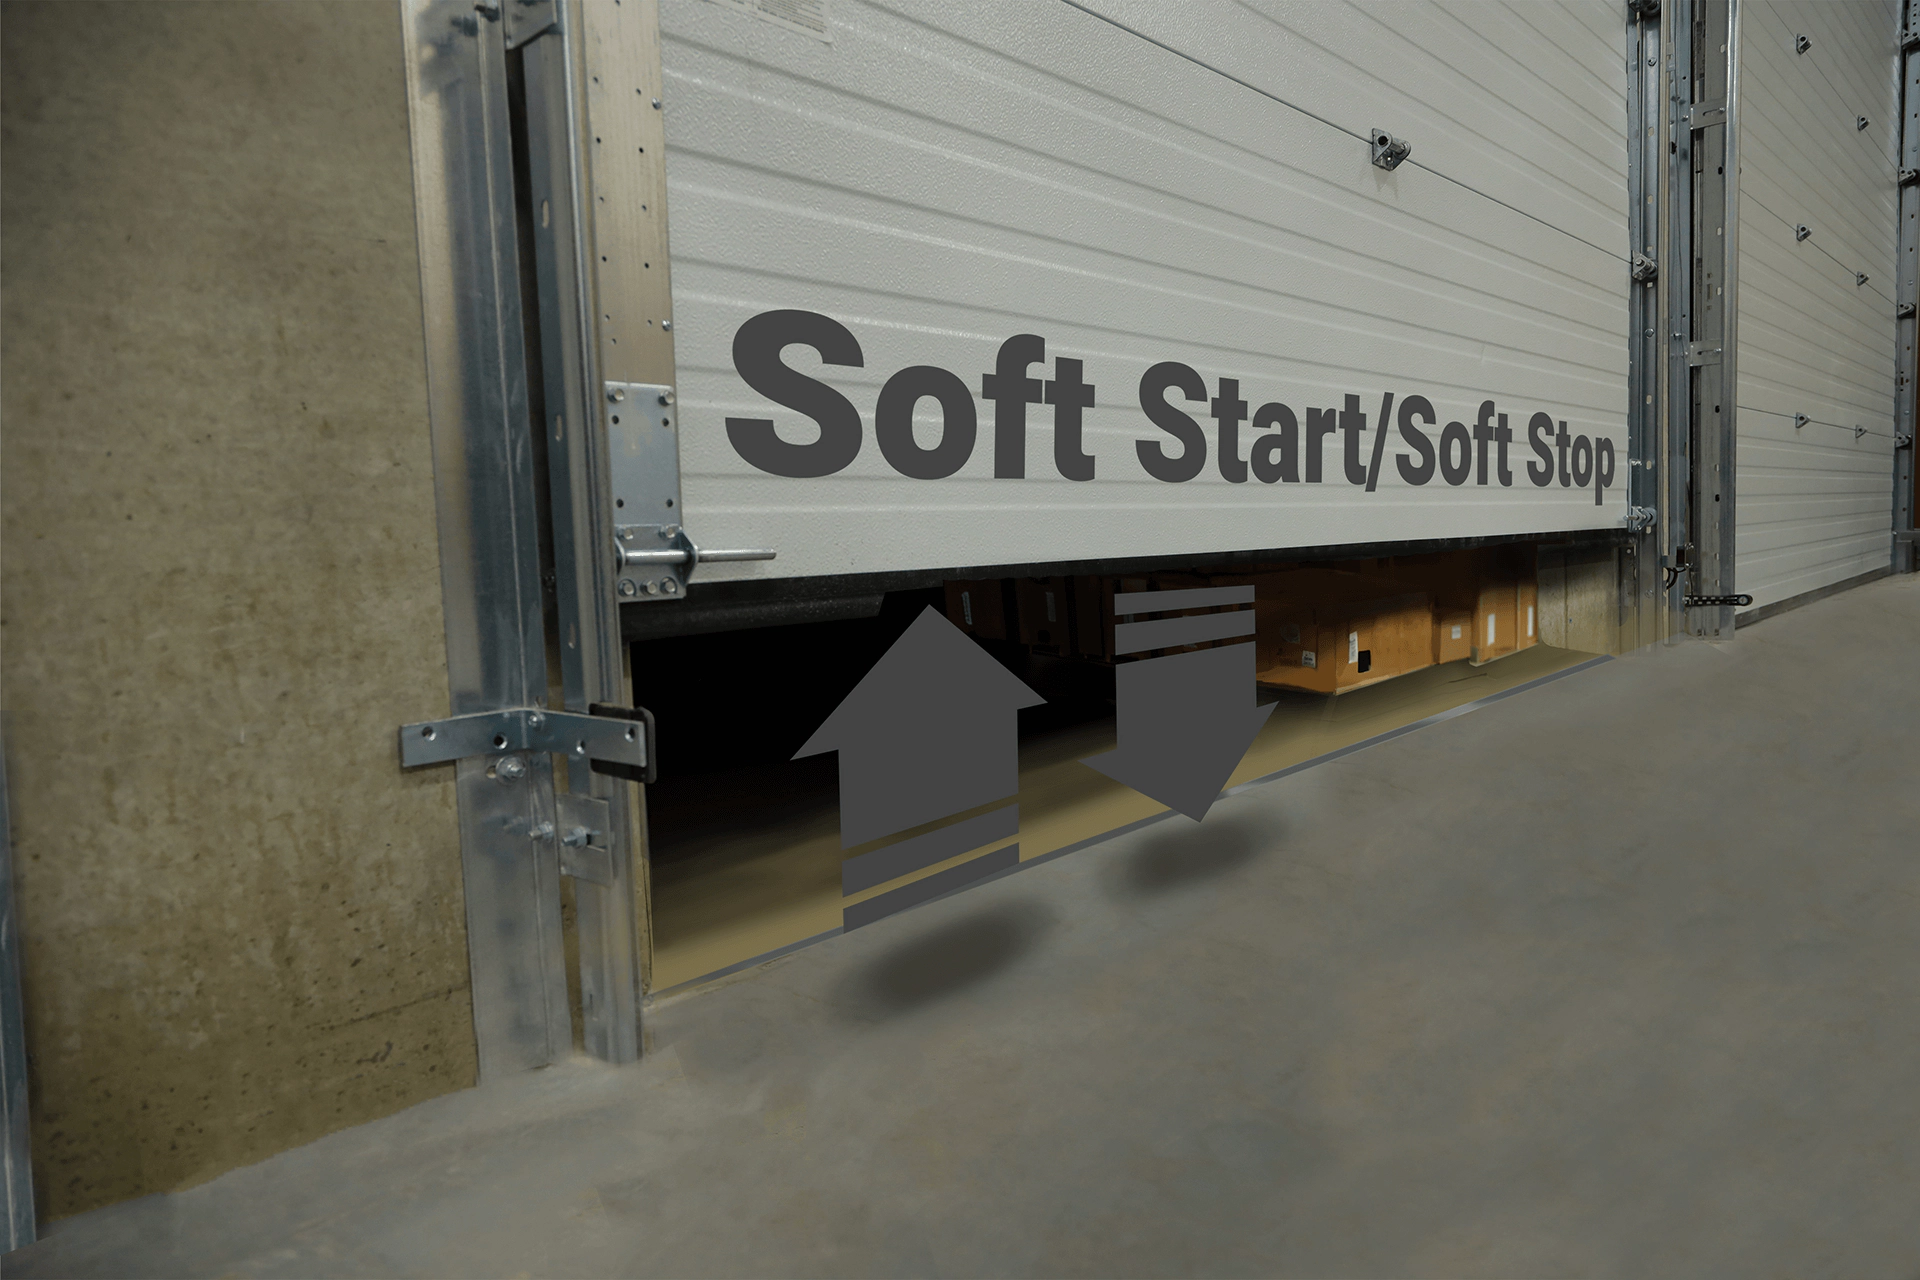 Adjustable Soft Start/Soft Stop